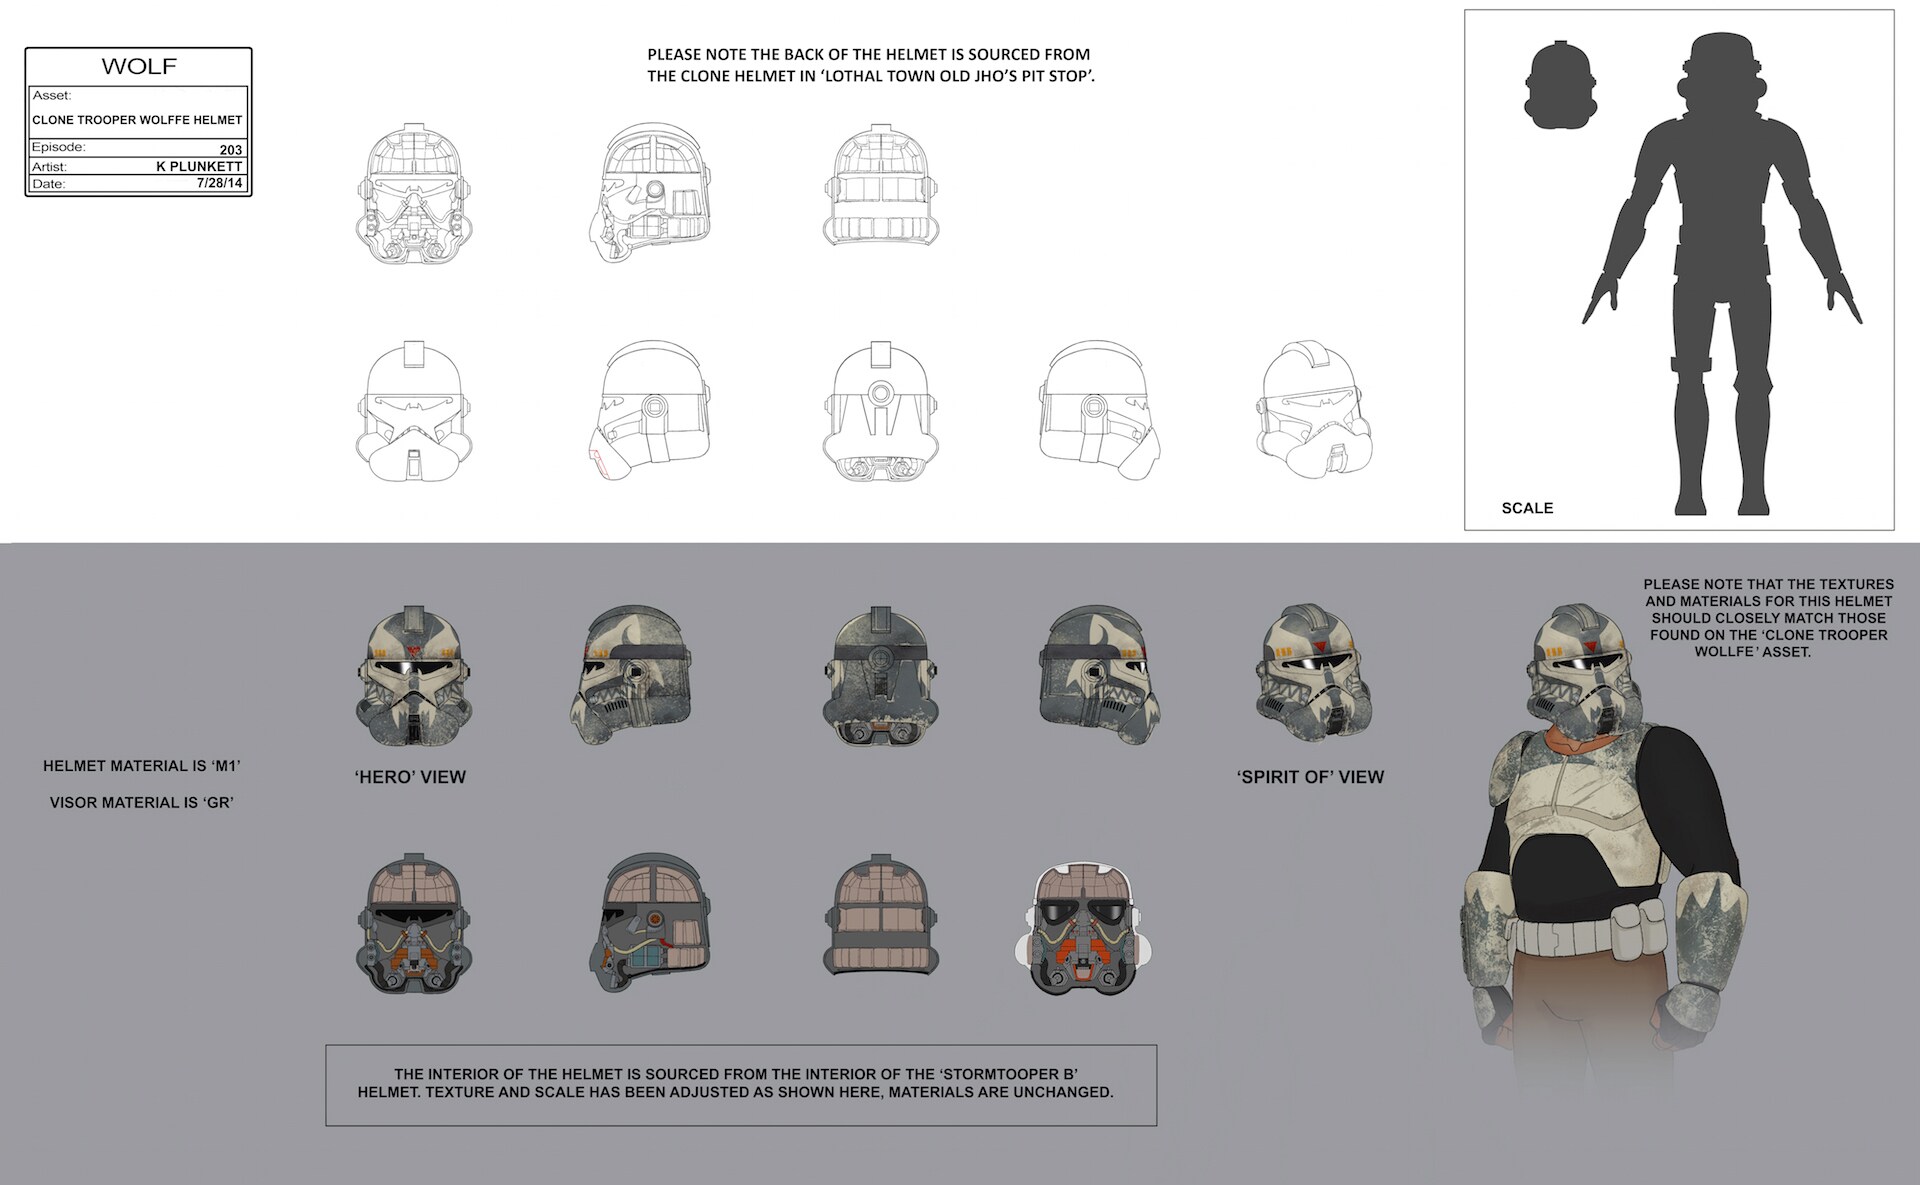 Clone Trooper Wolffe helmet illustration by Kilian Plunkett. 